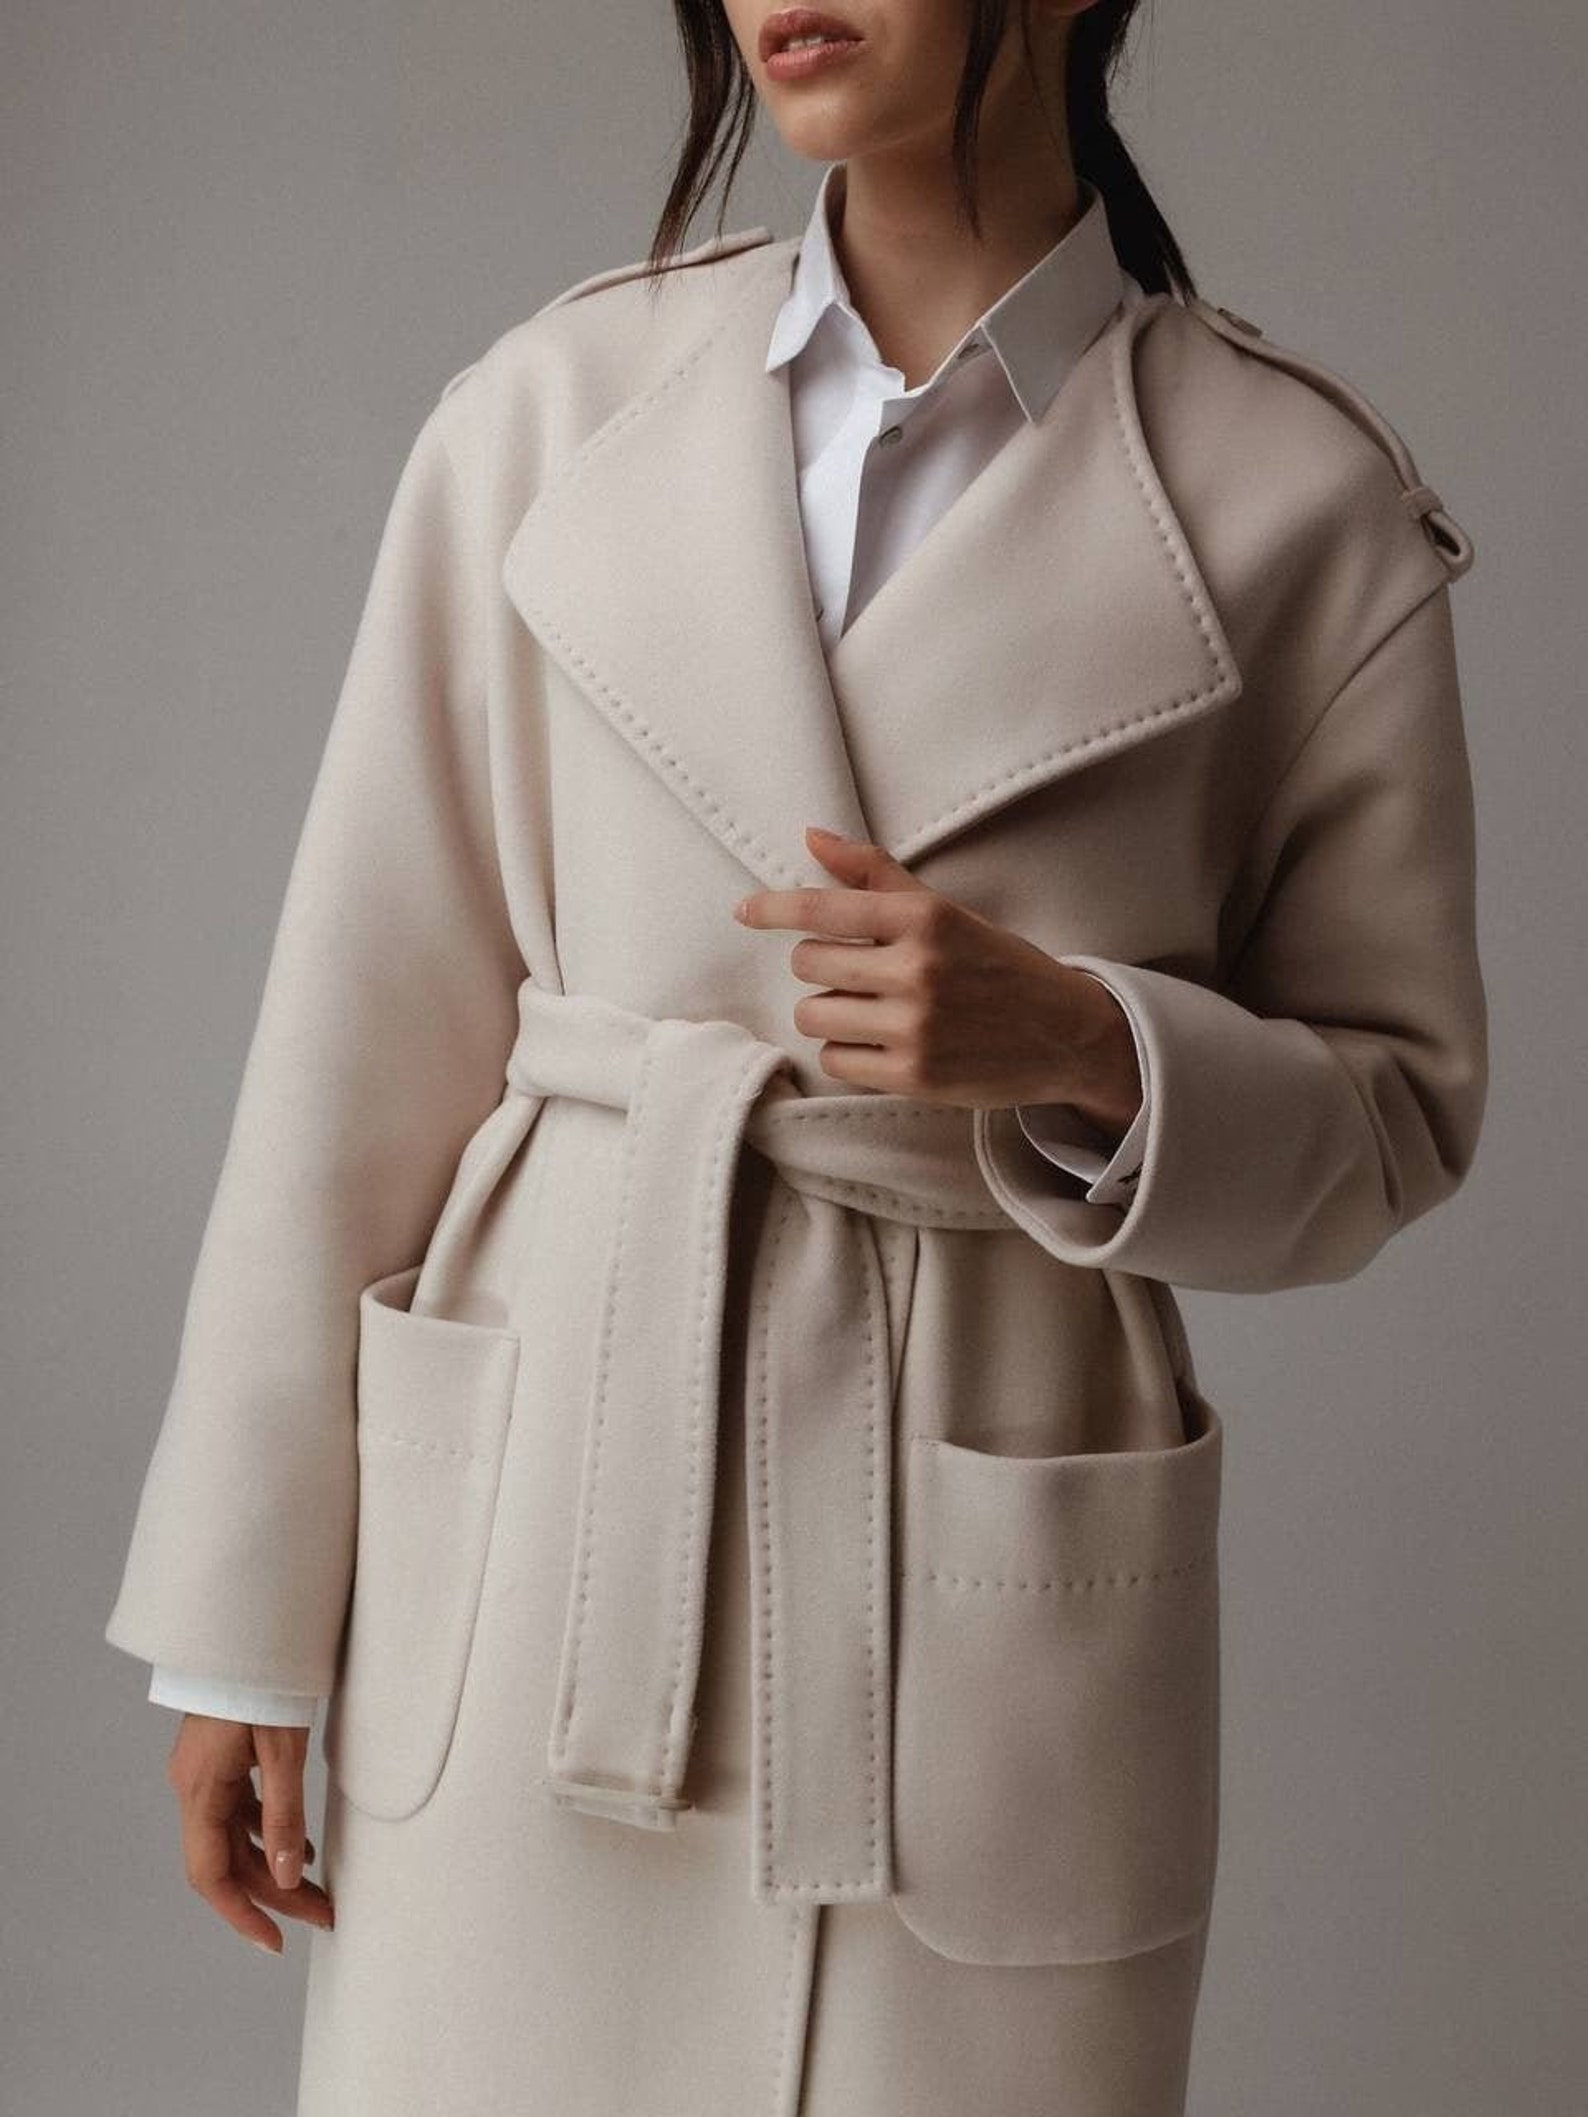 Trench ivory coat Coats on sale Wool ivory coat women | Etsy